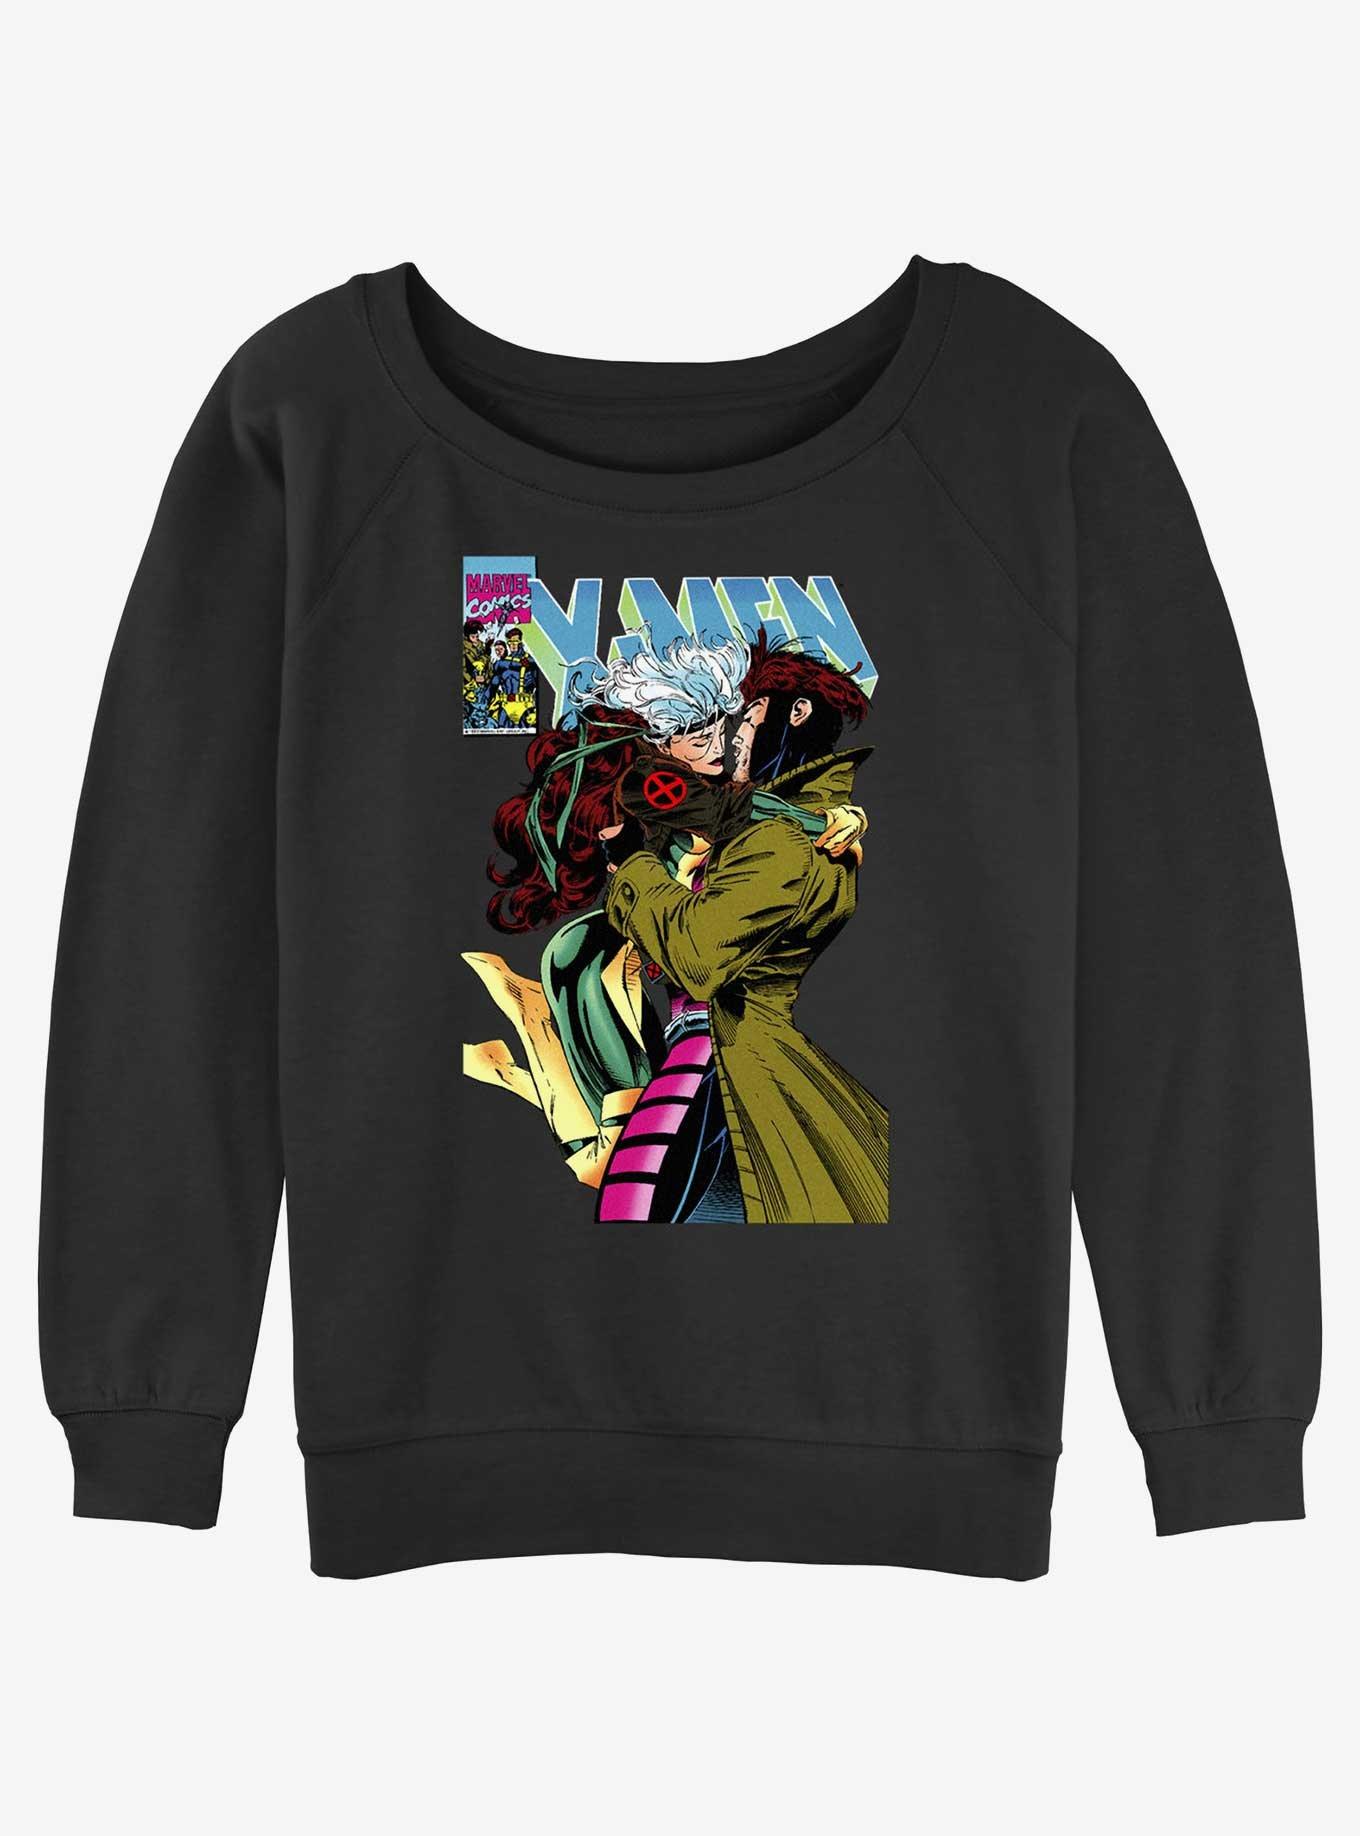 Marvel X-Men '97 Rogue & Gambit 4Eva Girls Slouchy Sweatshirt, , hi-res